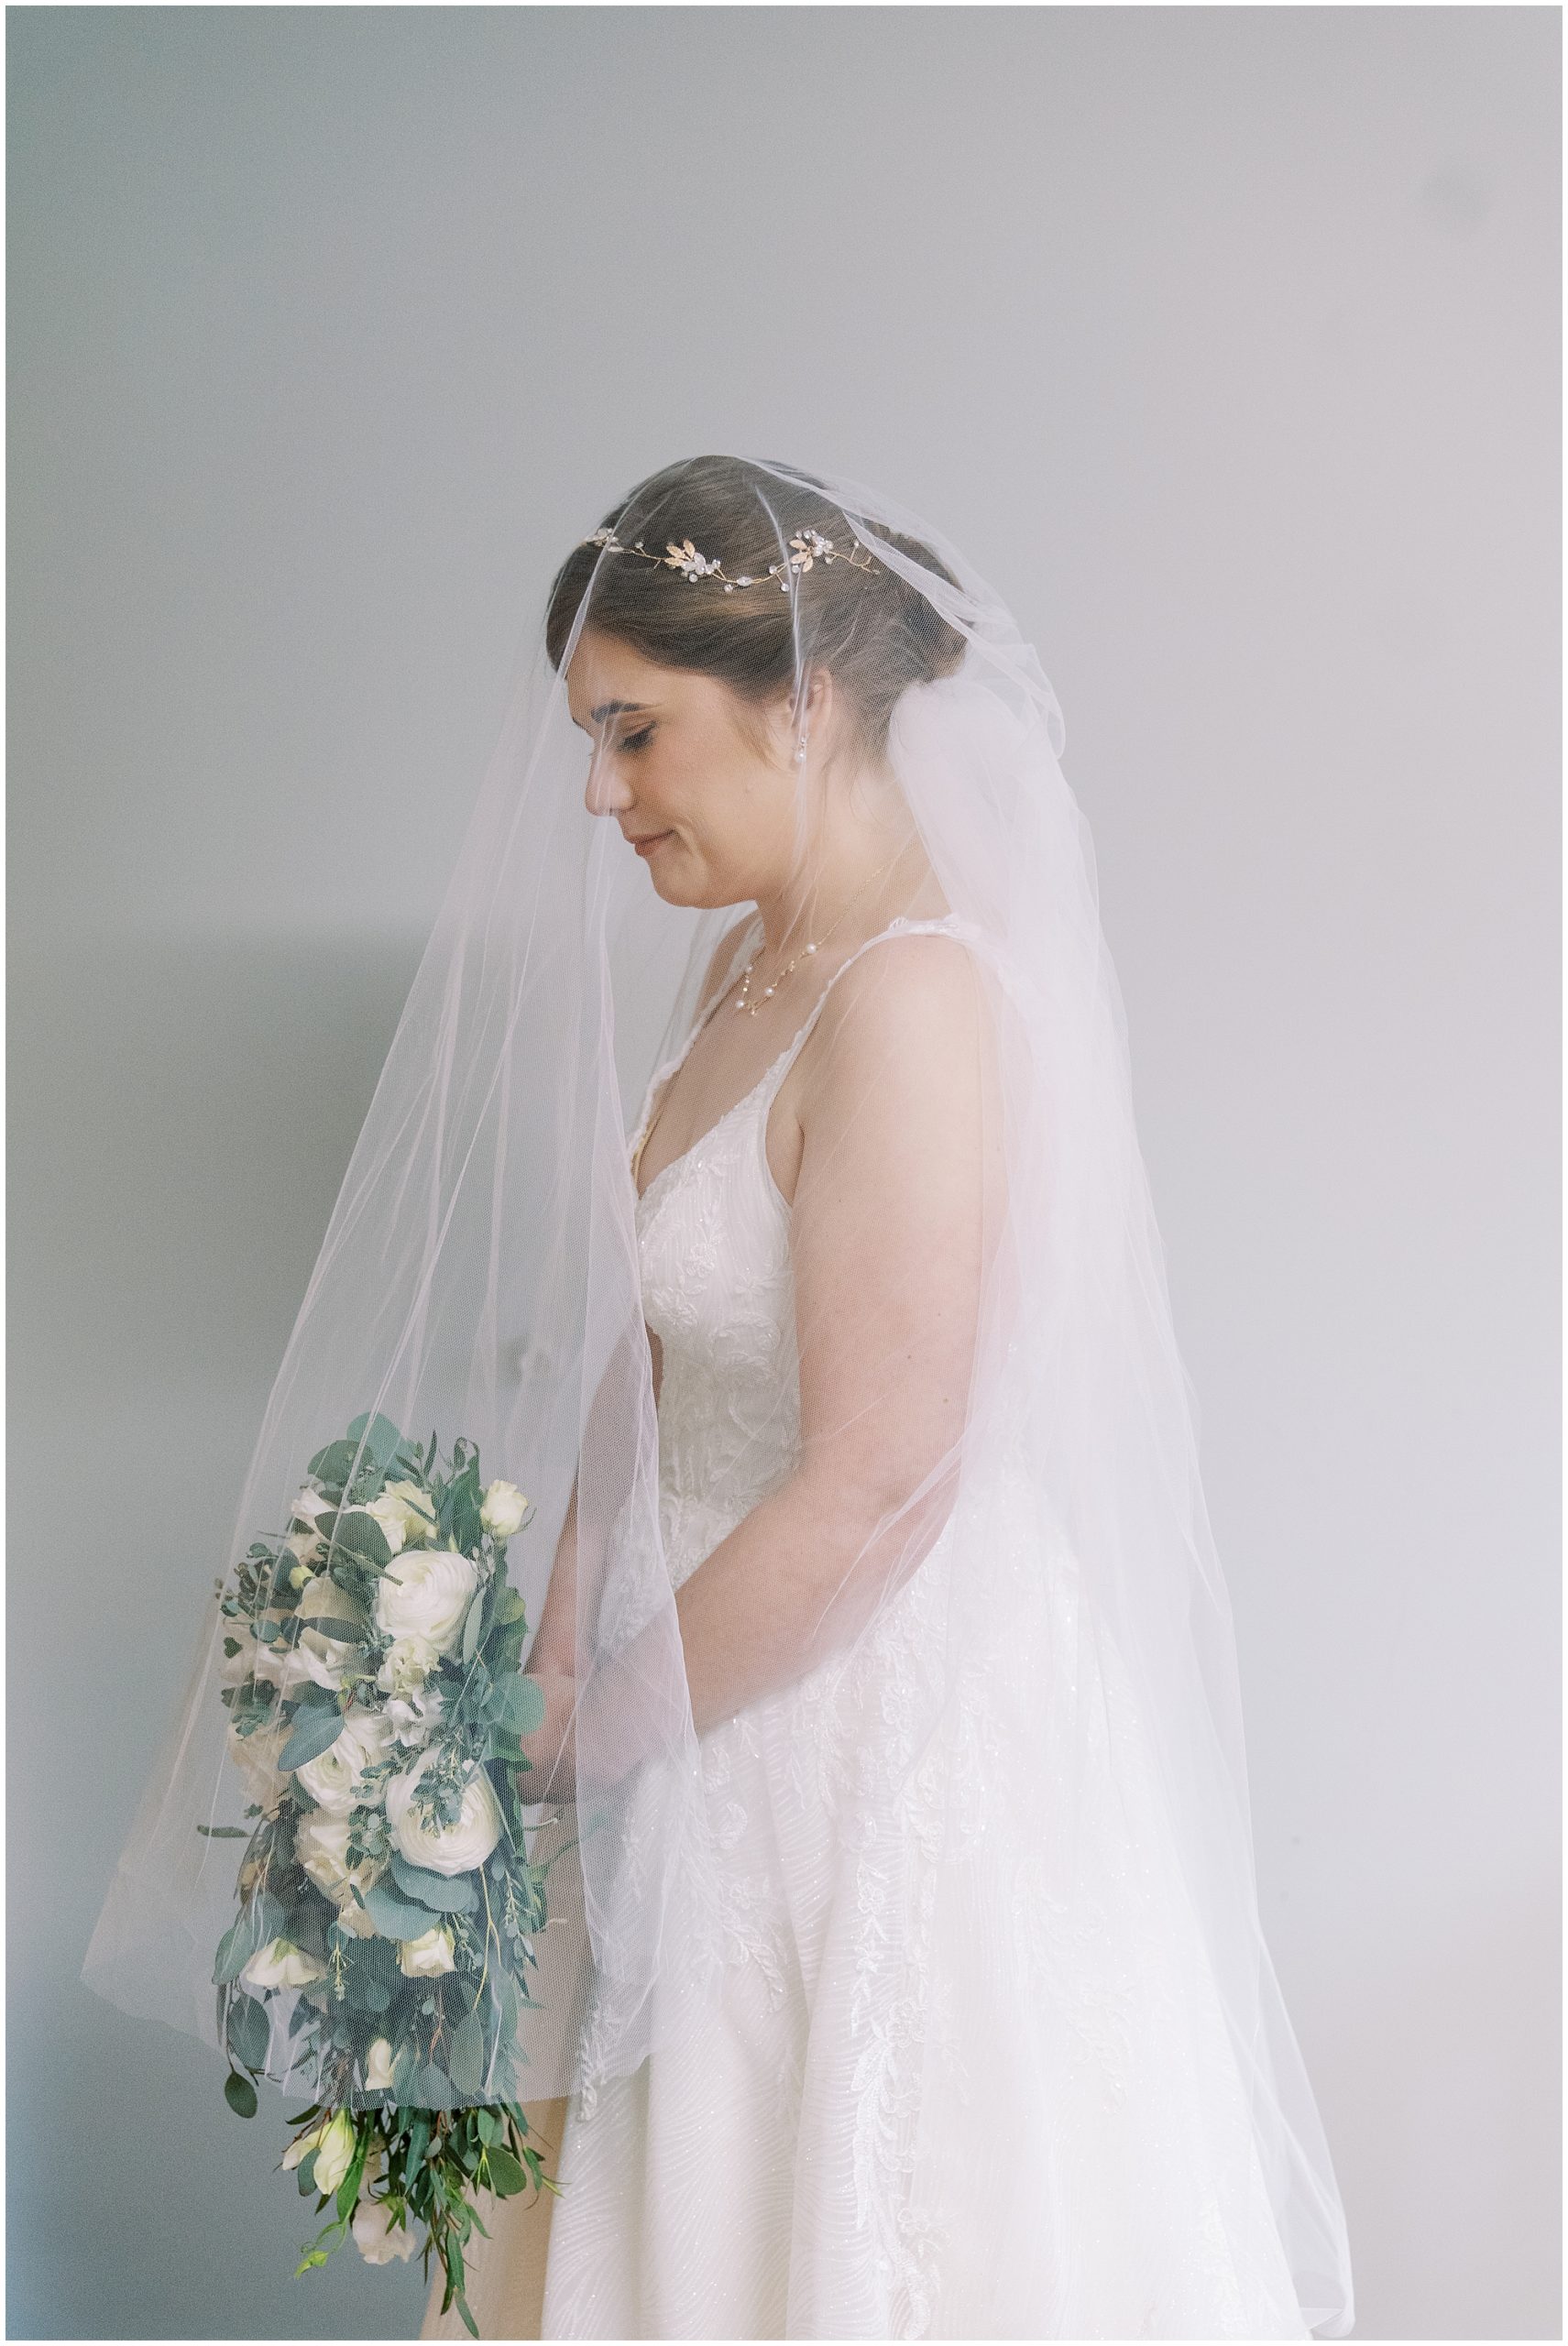 solo photo of the bride